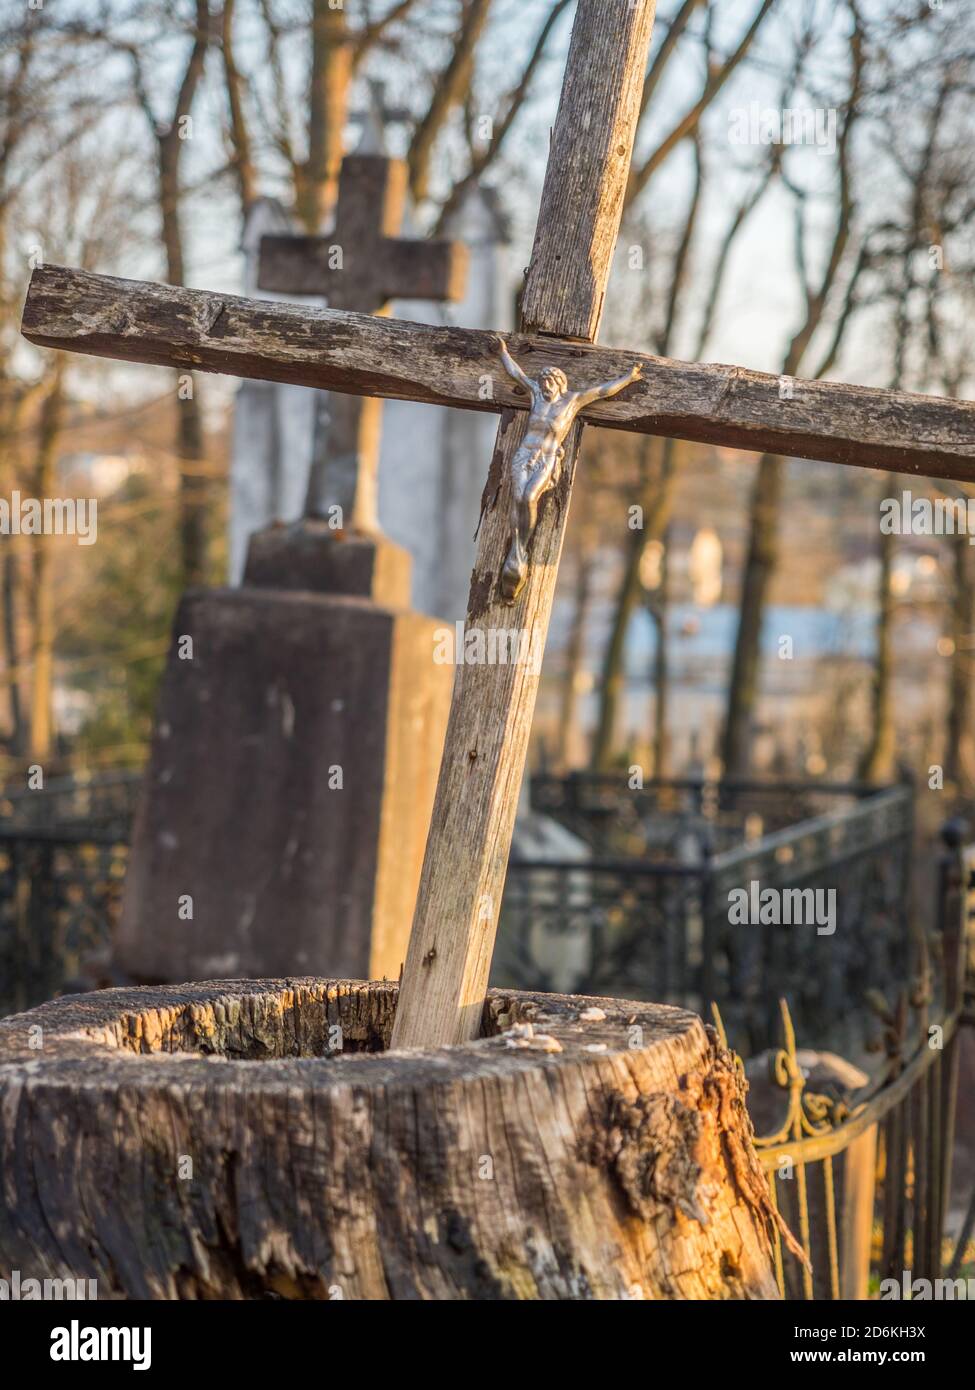 1860, sous le Second Empire, suite, Vilnius, Lituanie - Avril 08, 2018 : les anges de Bronze et de croix sur une tombe sur le cimetière local, l'Europe à Vilnius Banque D'Images